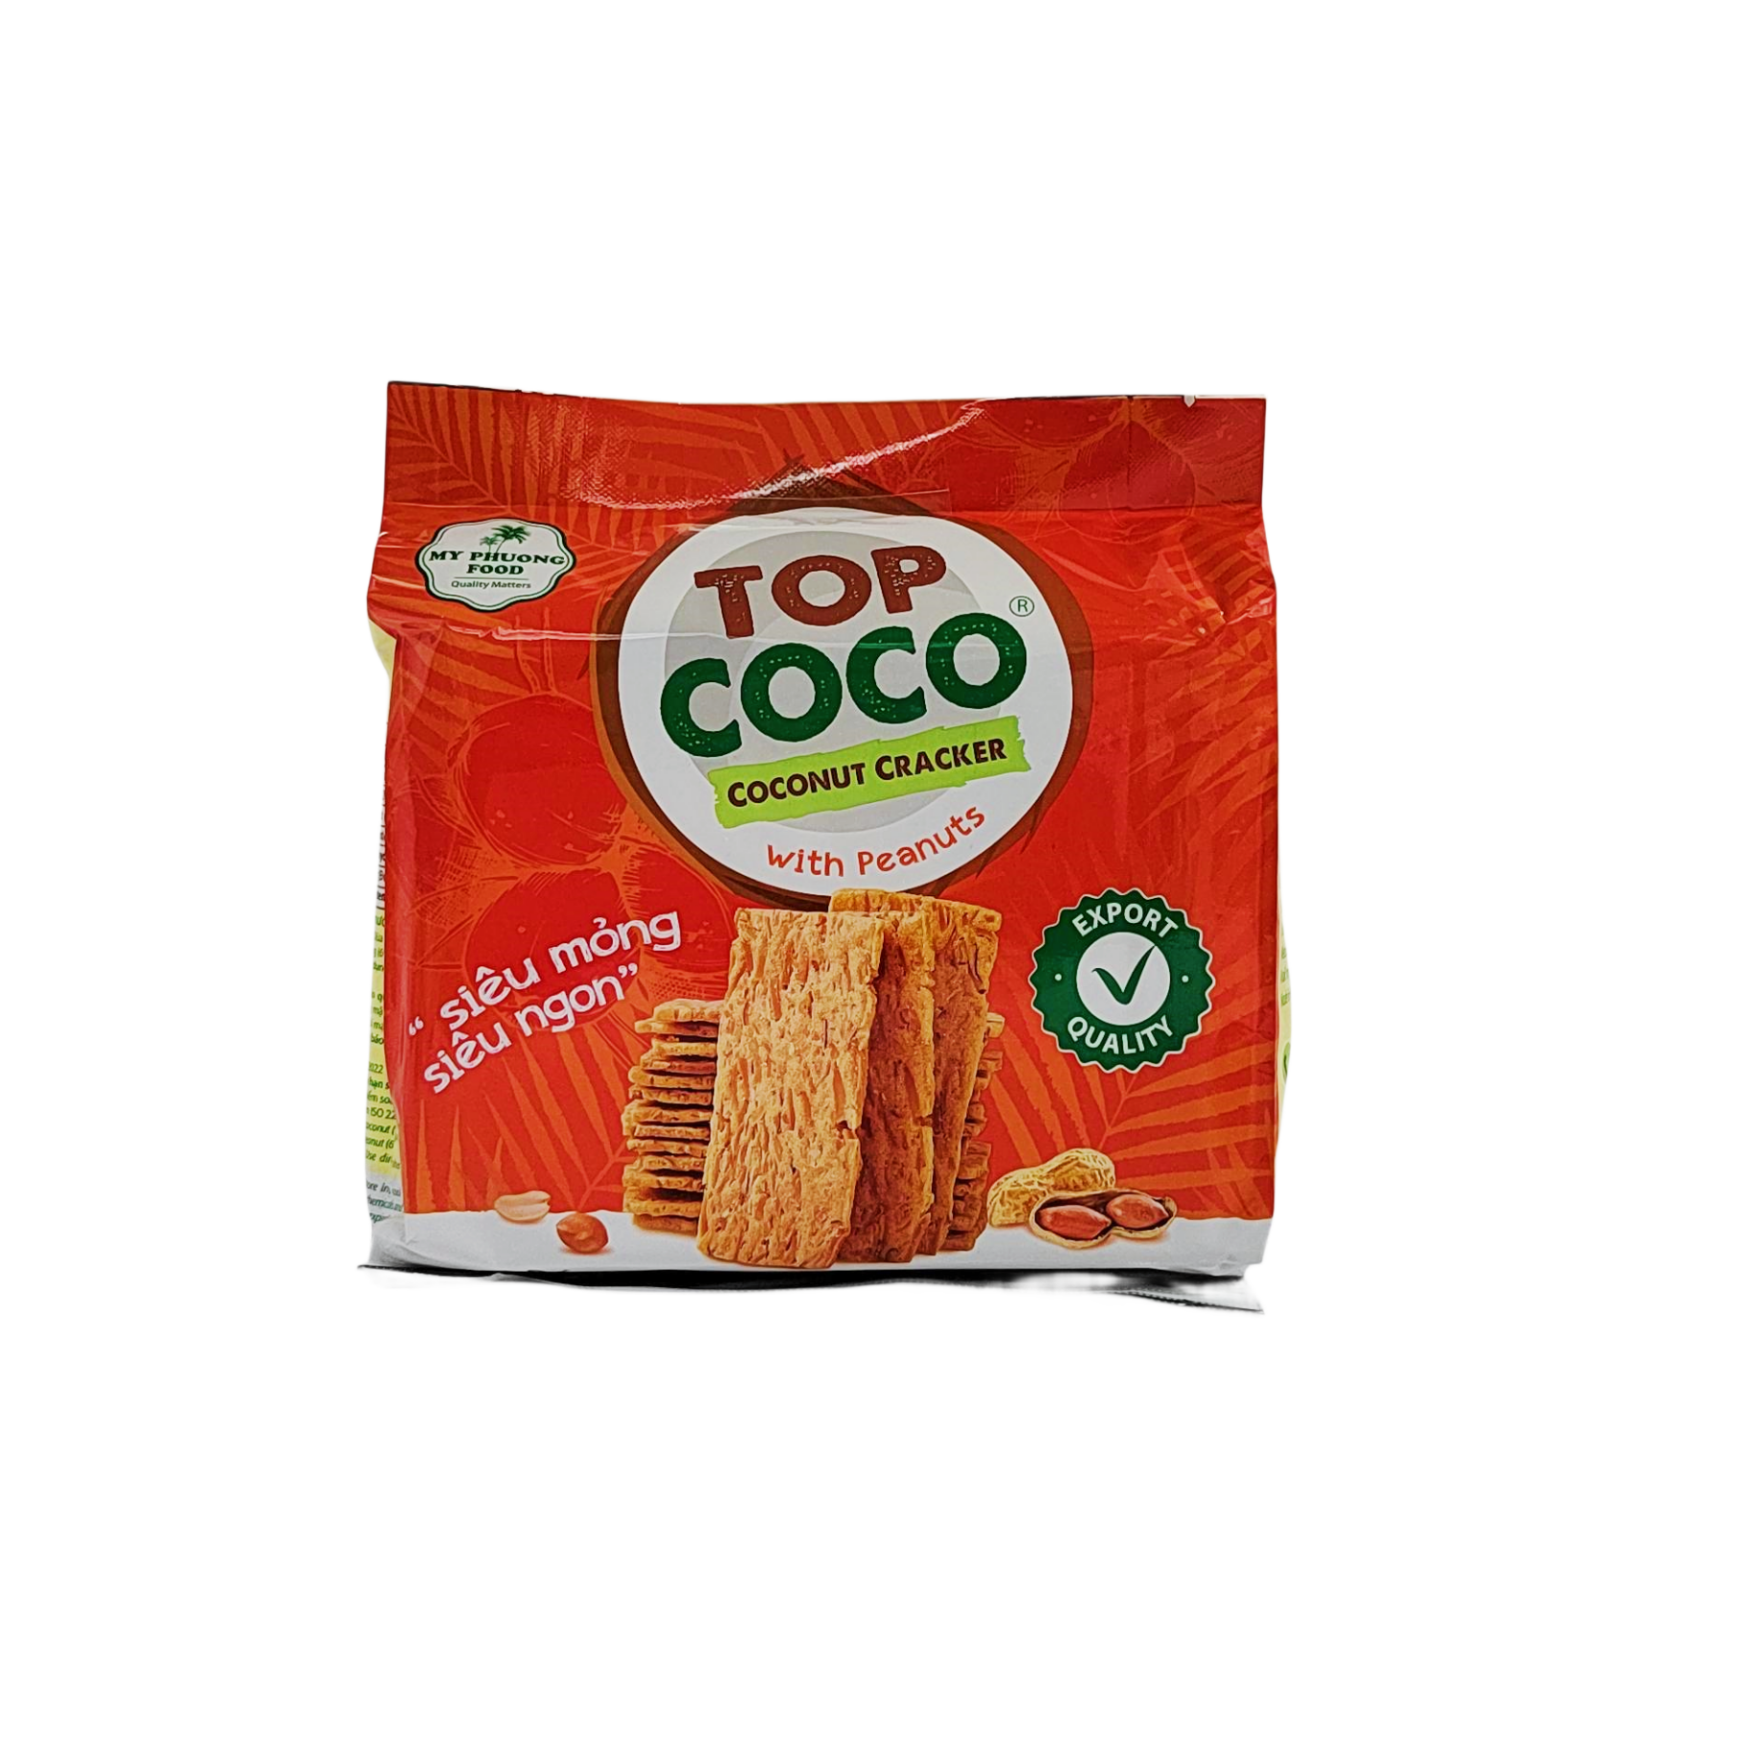 花生味椰子饼干 150g Top Coco 越南